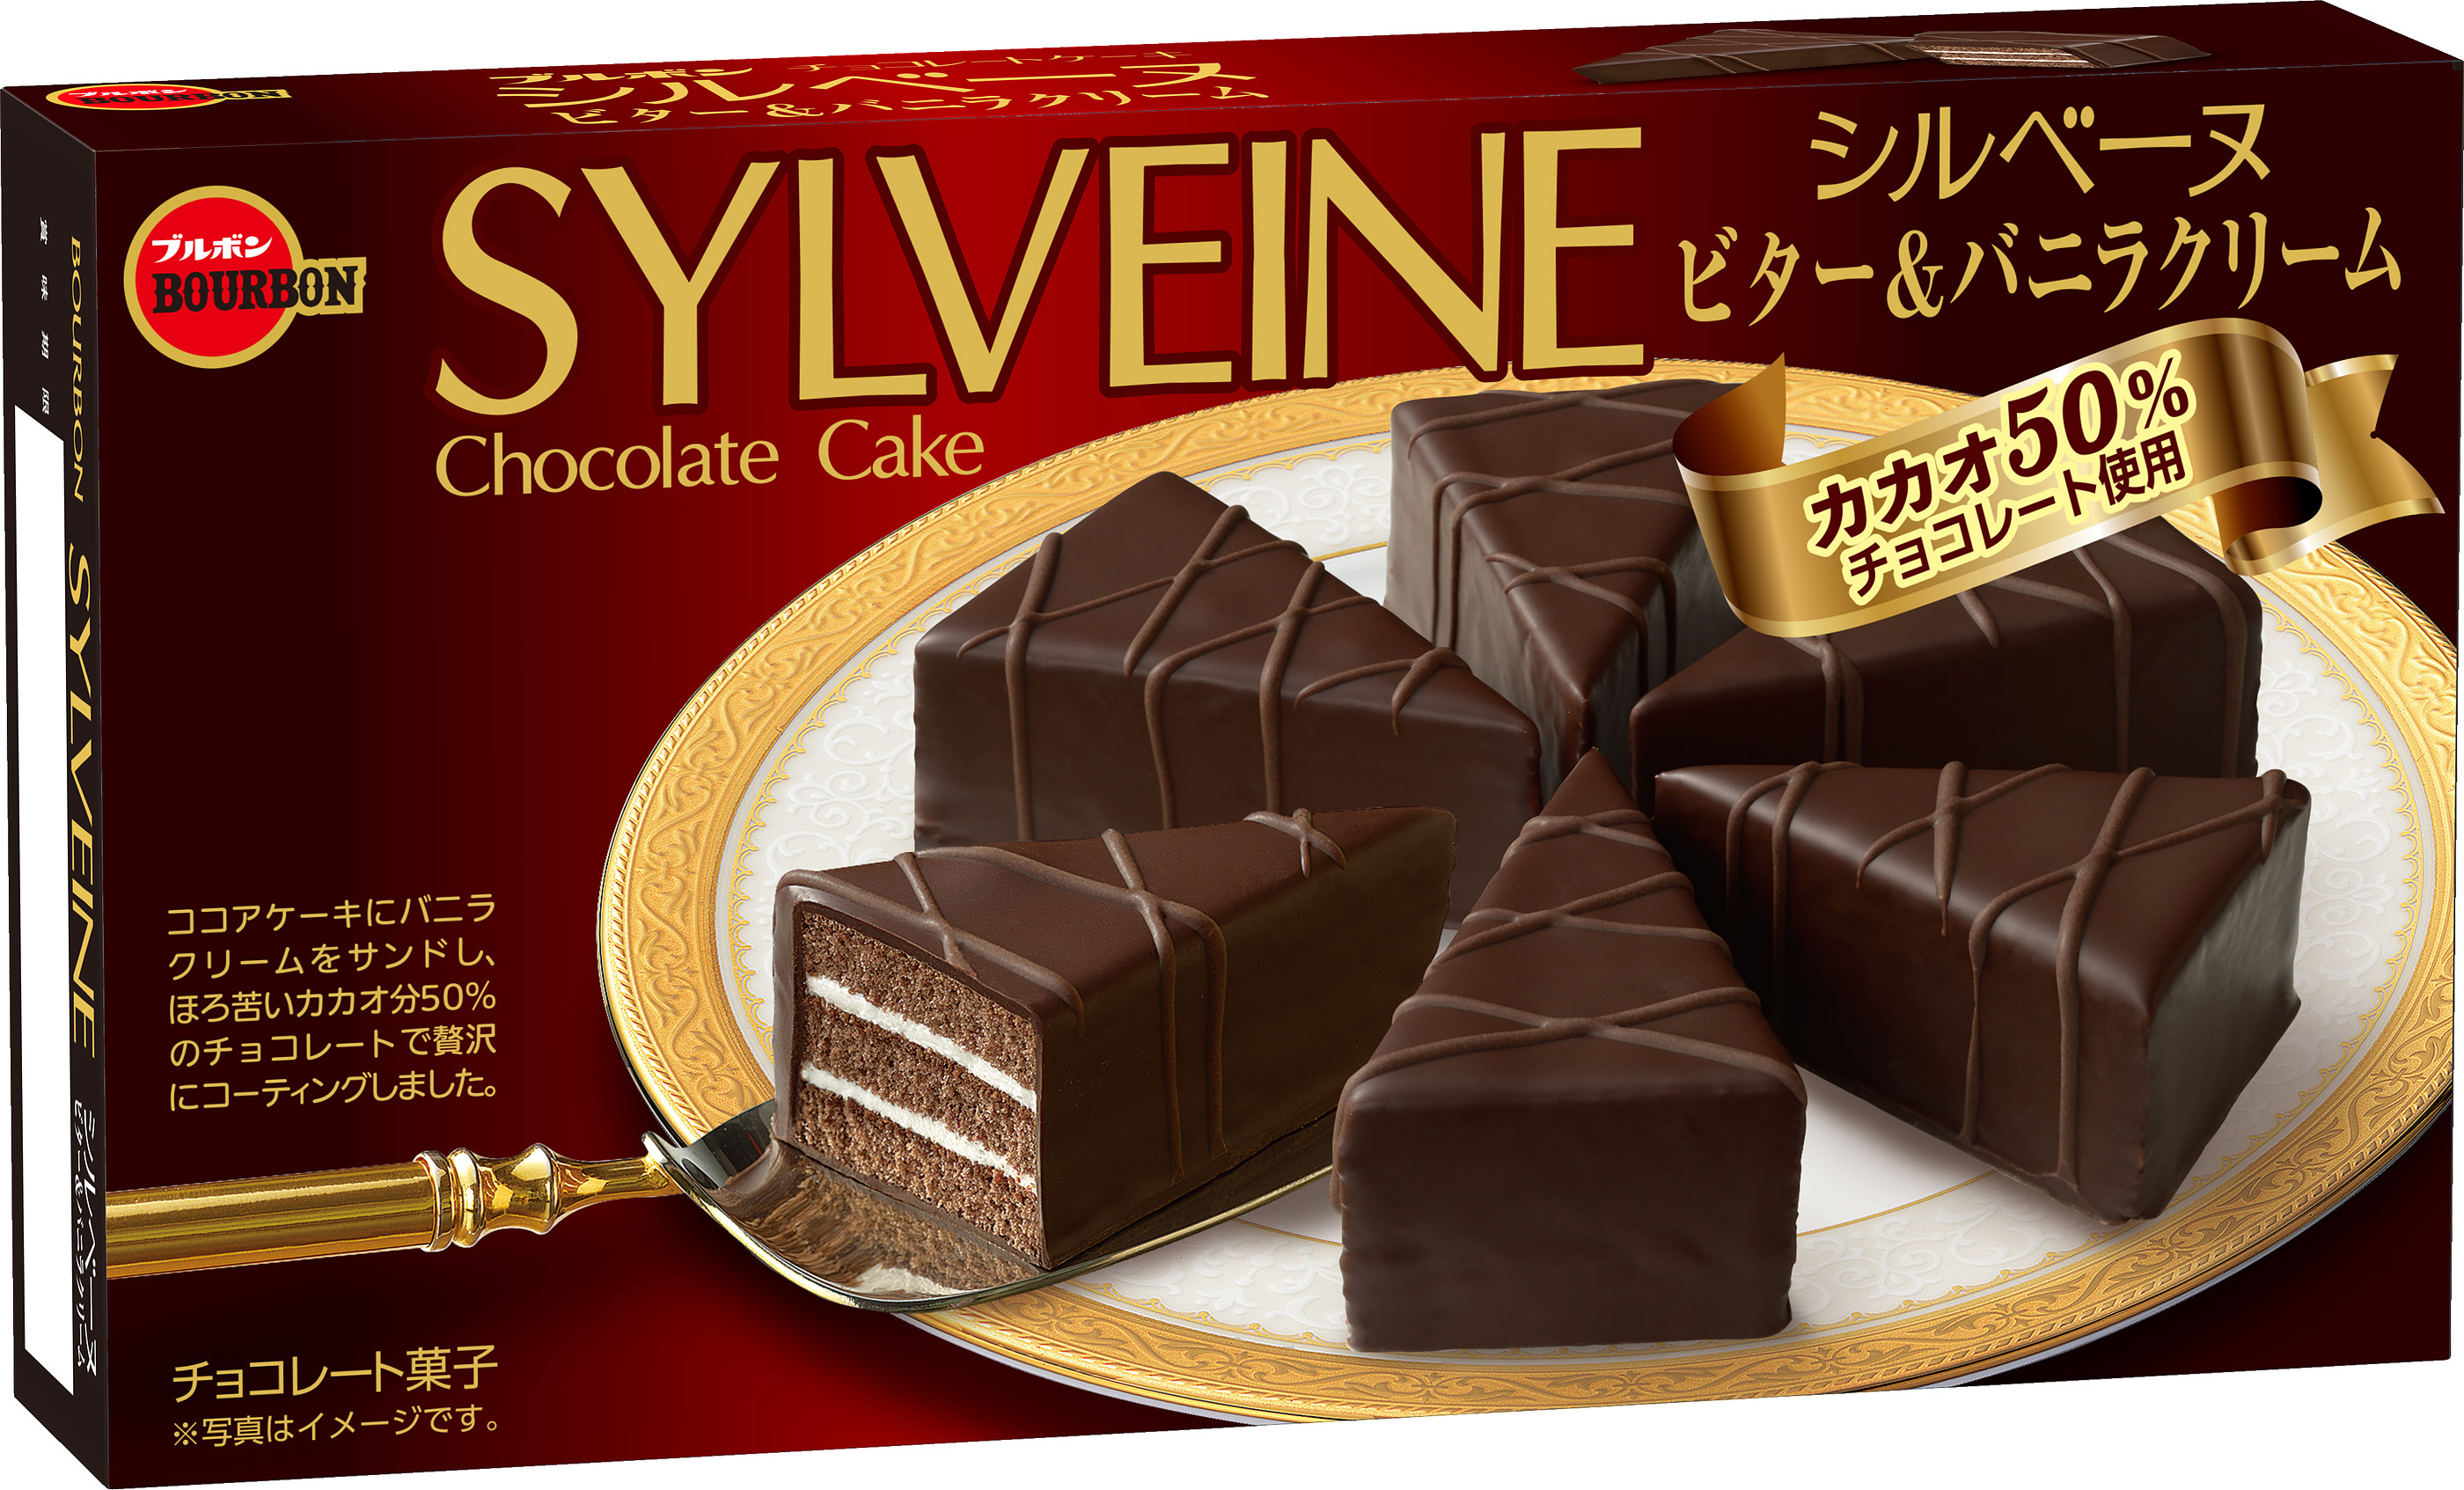 ブルボン 三角形のチョコレートケーキ シルベーヌ シルベーヌビター バニラクリーム を9月10日 火 から新発売 株式会社ブルボンのプレスリリース